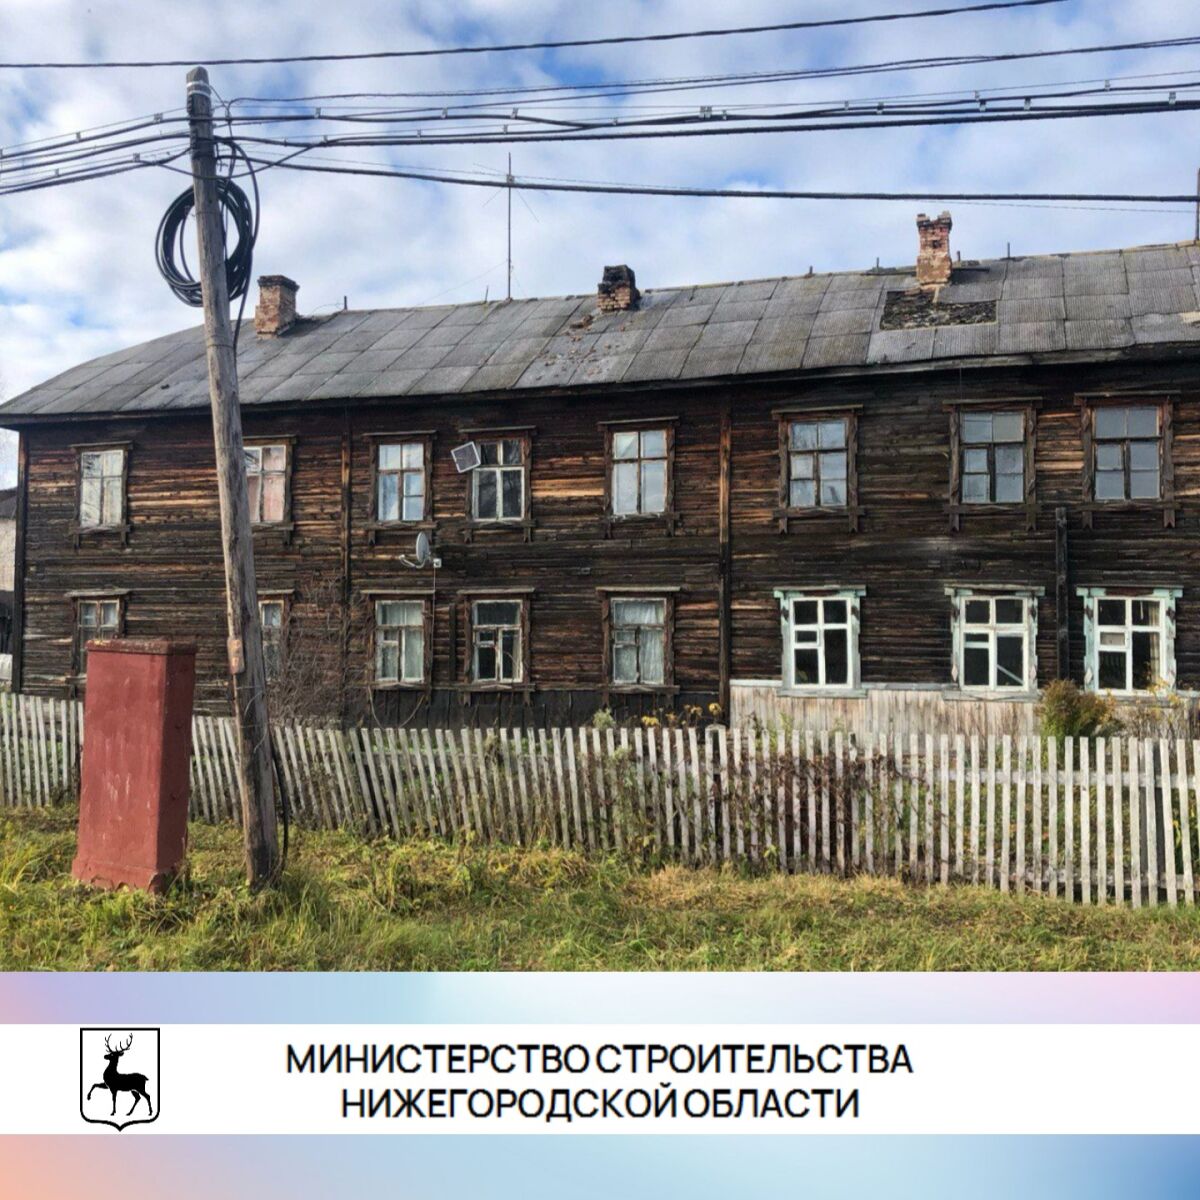 Список домов под расселение утвердили в Нижегородской области до 2028 года